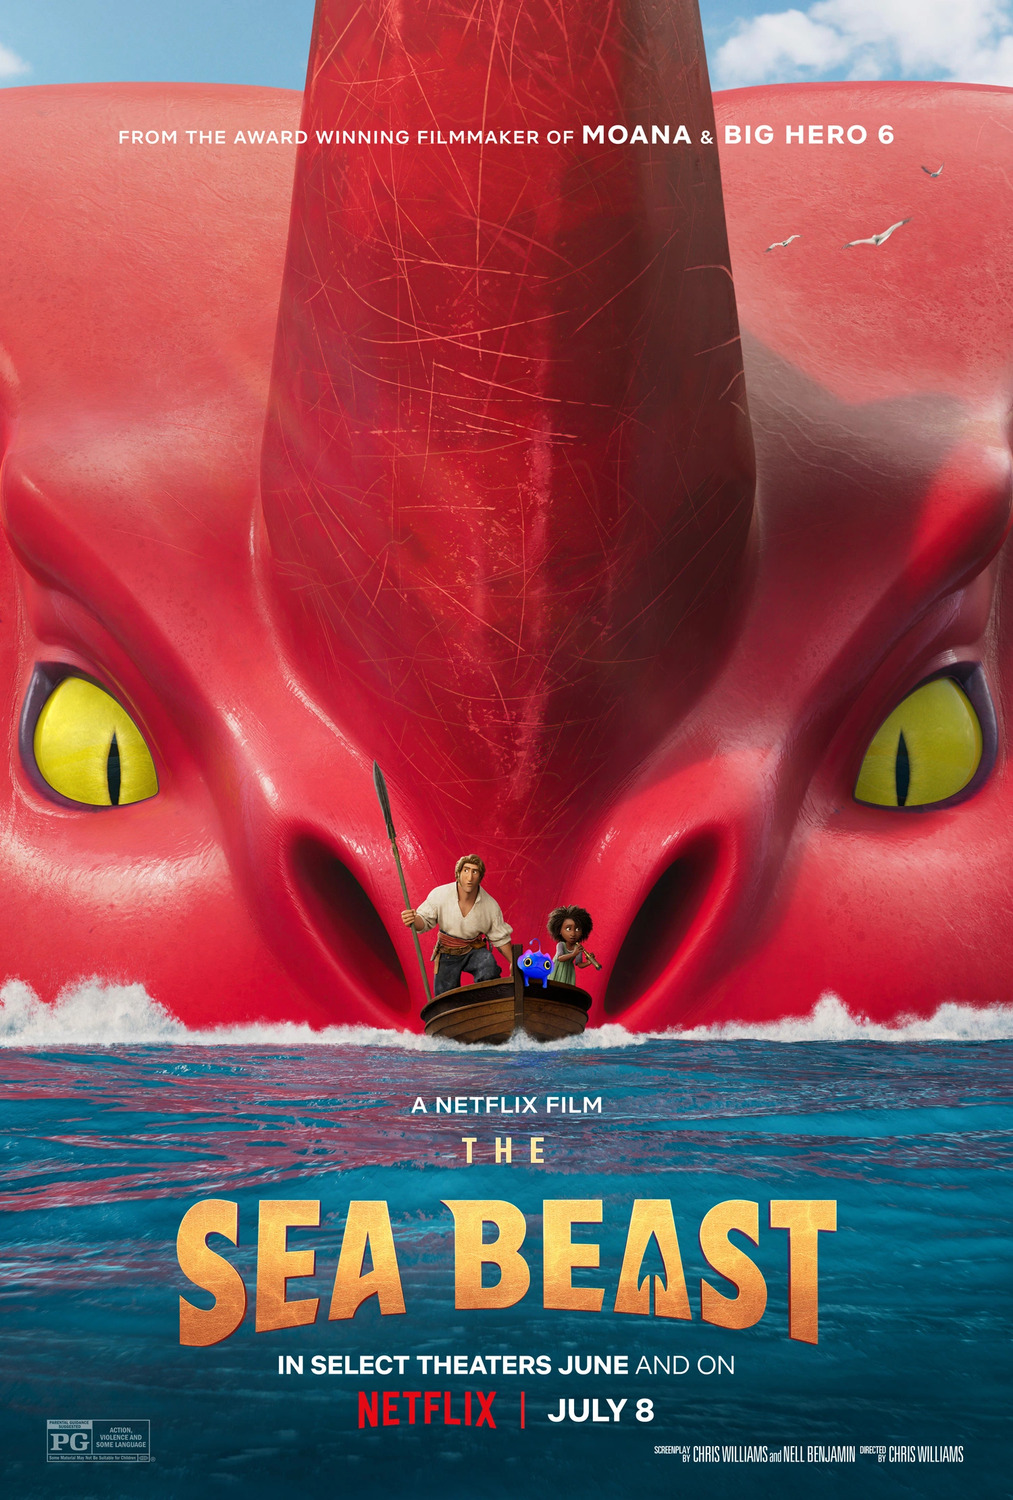 ดูหนังออนไลน์ฟรี ดูหนังออนไลน์ฟรี NETFLIX The Sea Beast 2022 moviehdfree